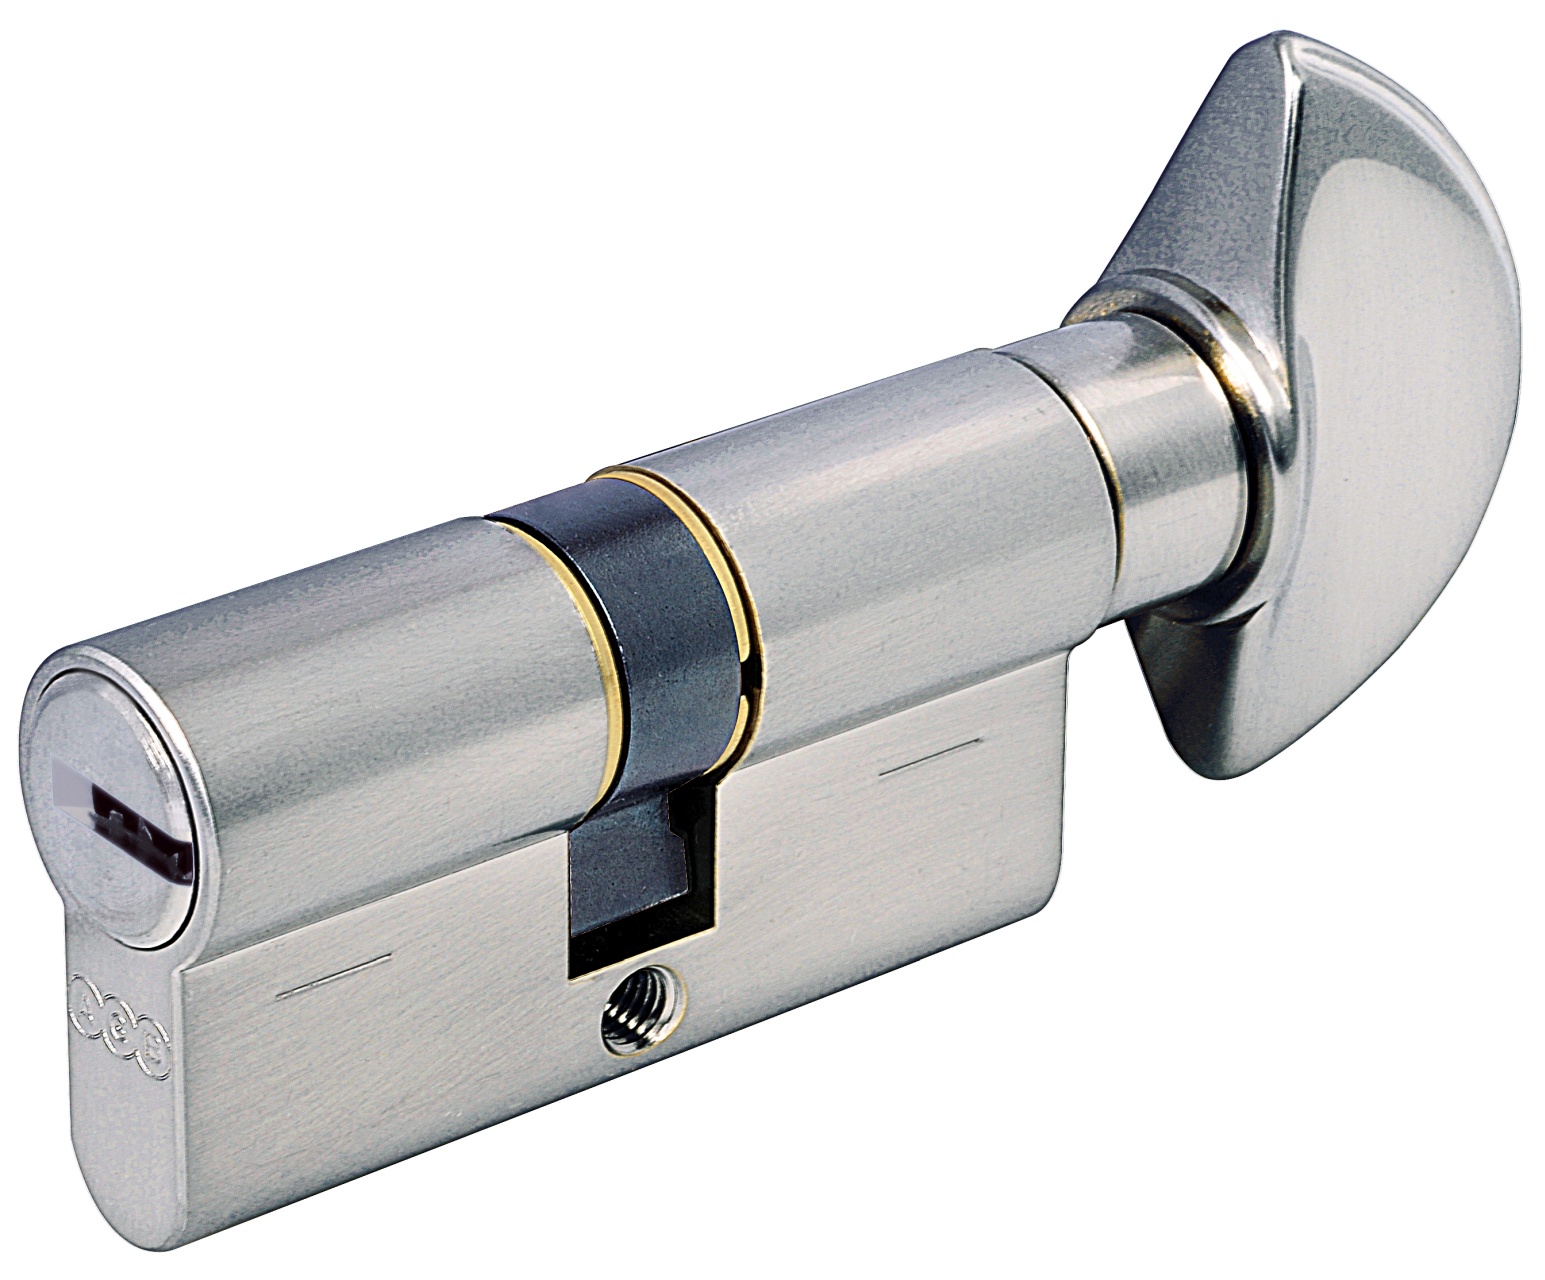 AGB -  Cilindro SCUDO 5000 PS frizionato anti bamping con chiave e pomolo - col. LUCIDO VERNICIATO - lunghezza 95 - misura P-45-10-40